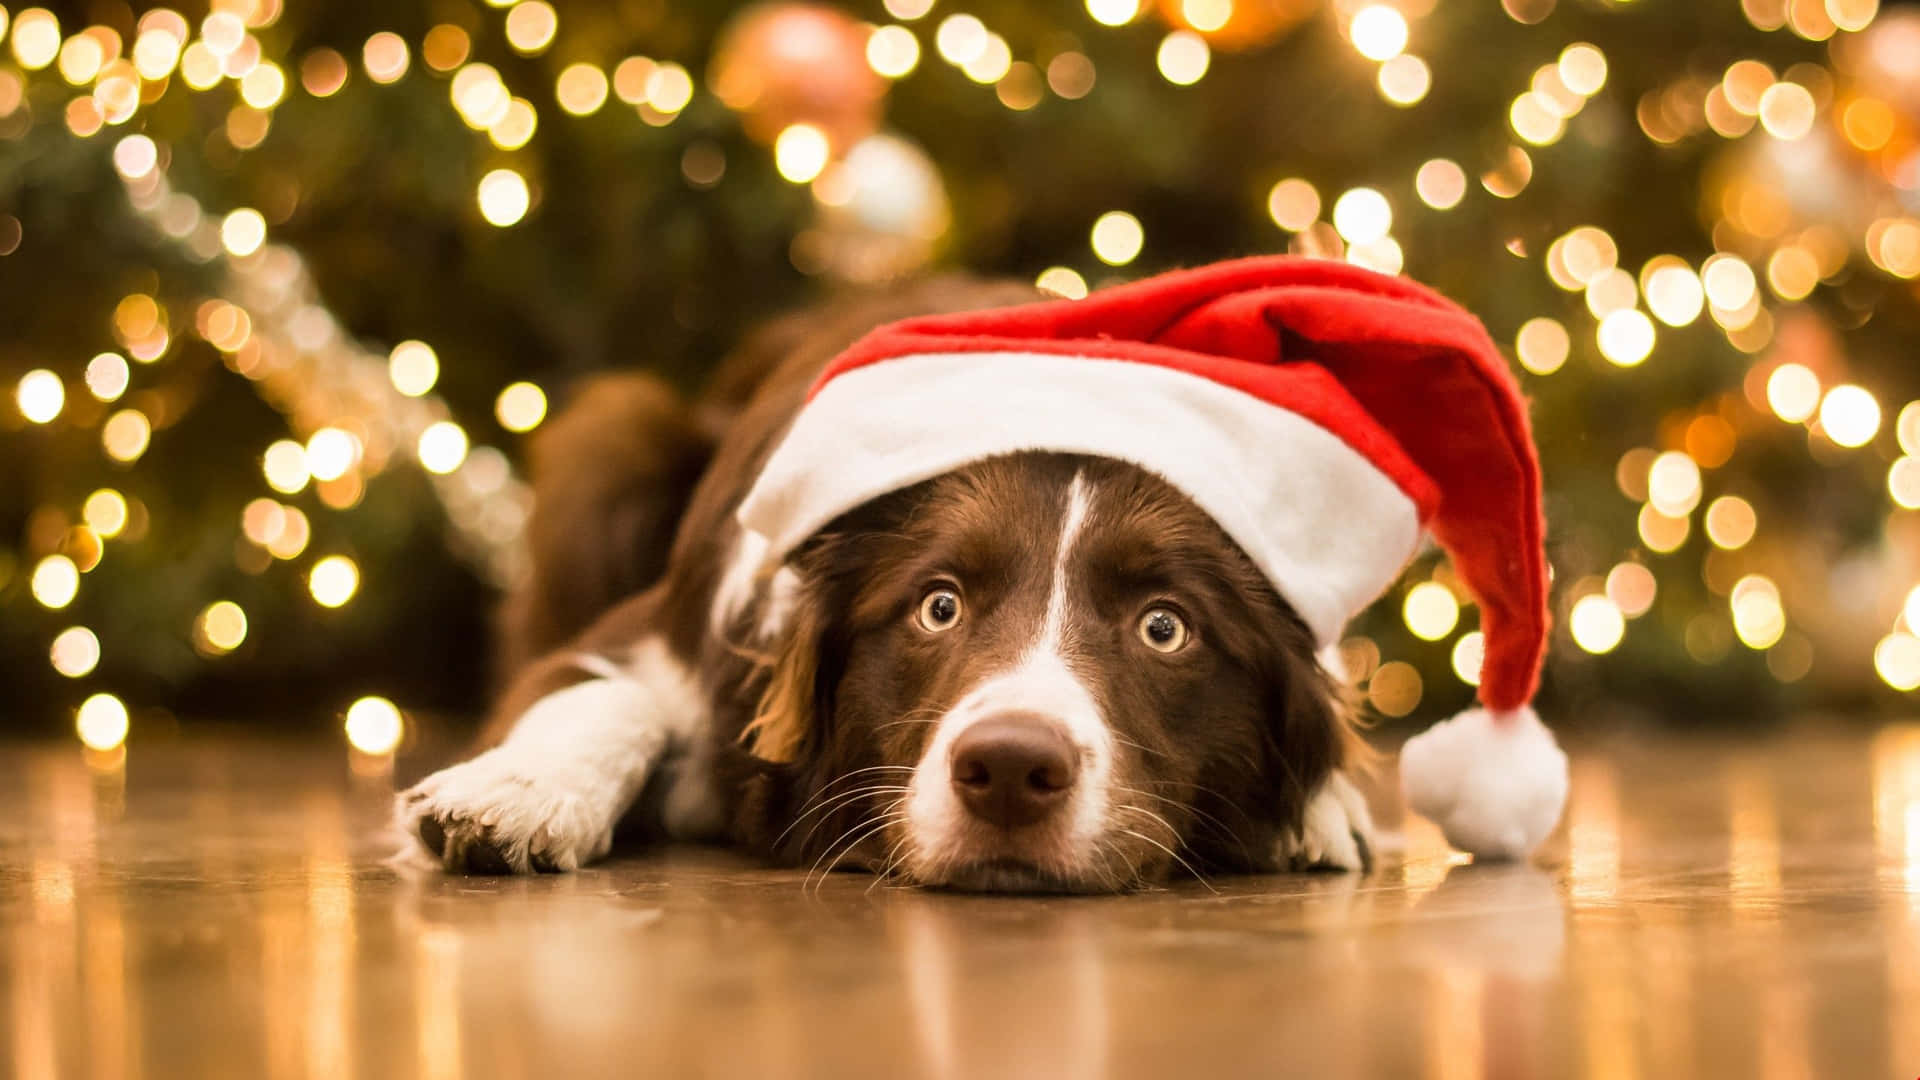 Sad Christmas Dog Near Tree Background